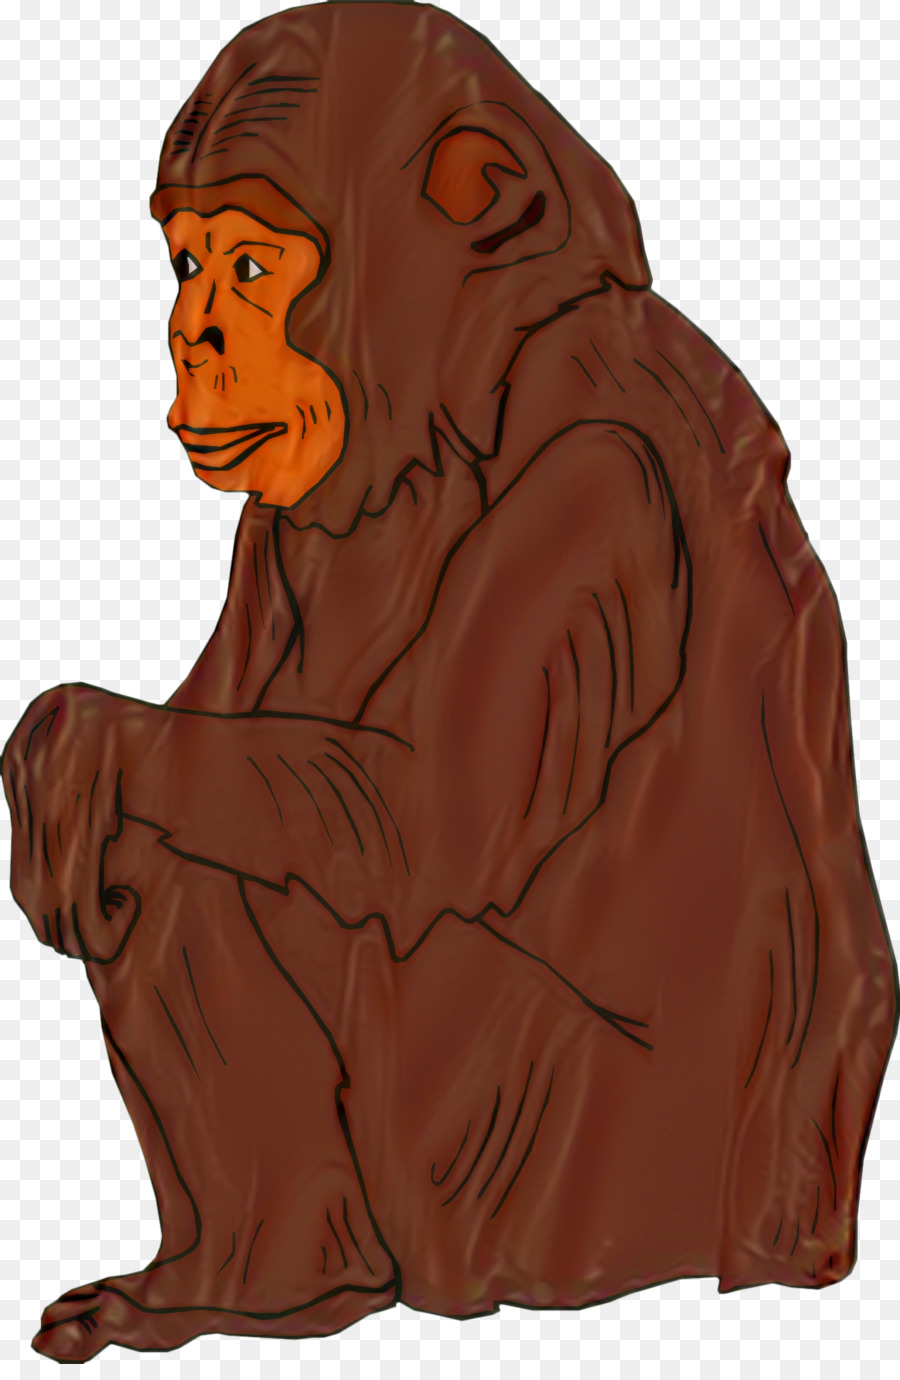 Ape Chimpanzee Simian Clip art Orangutan - 